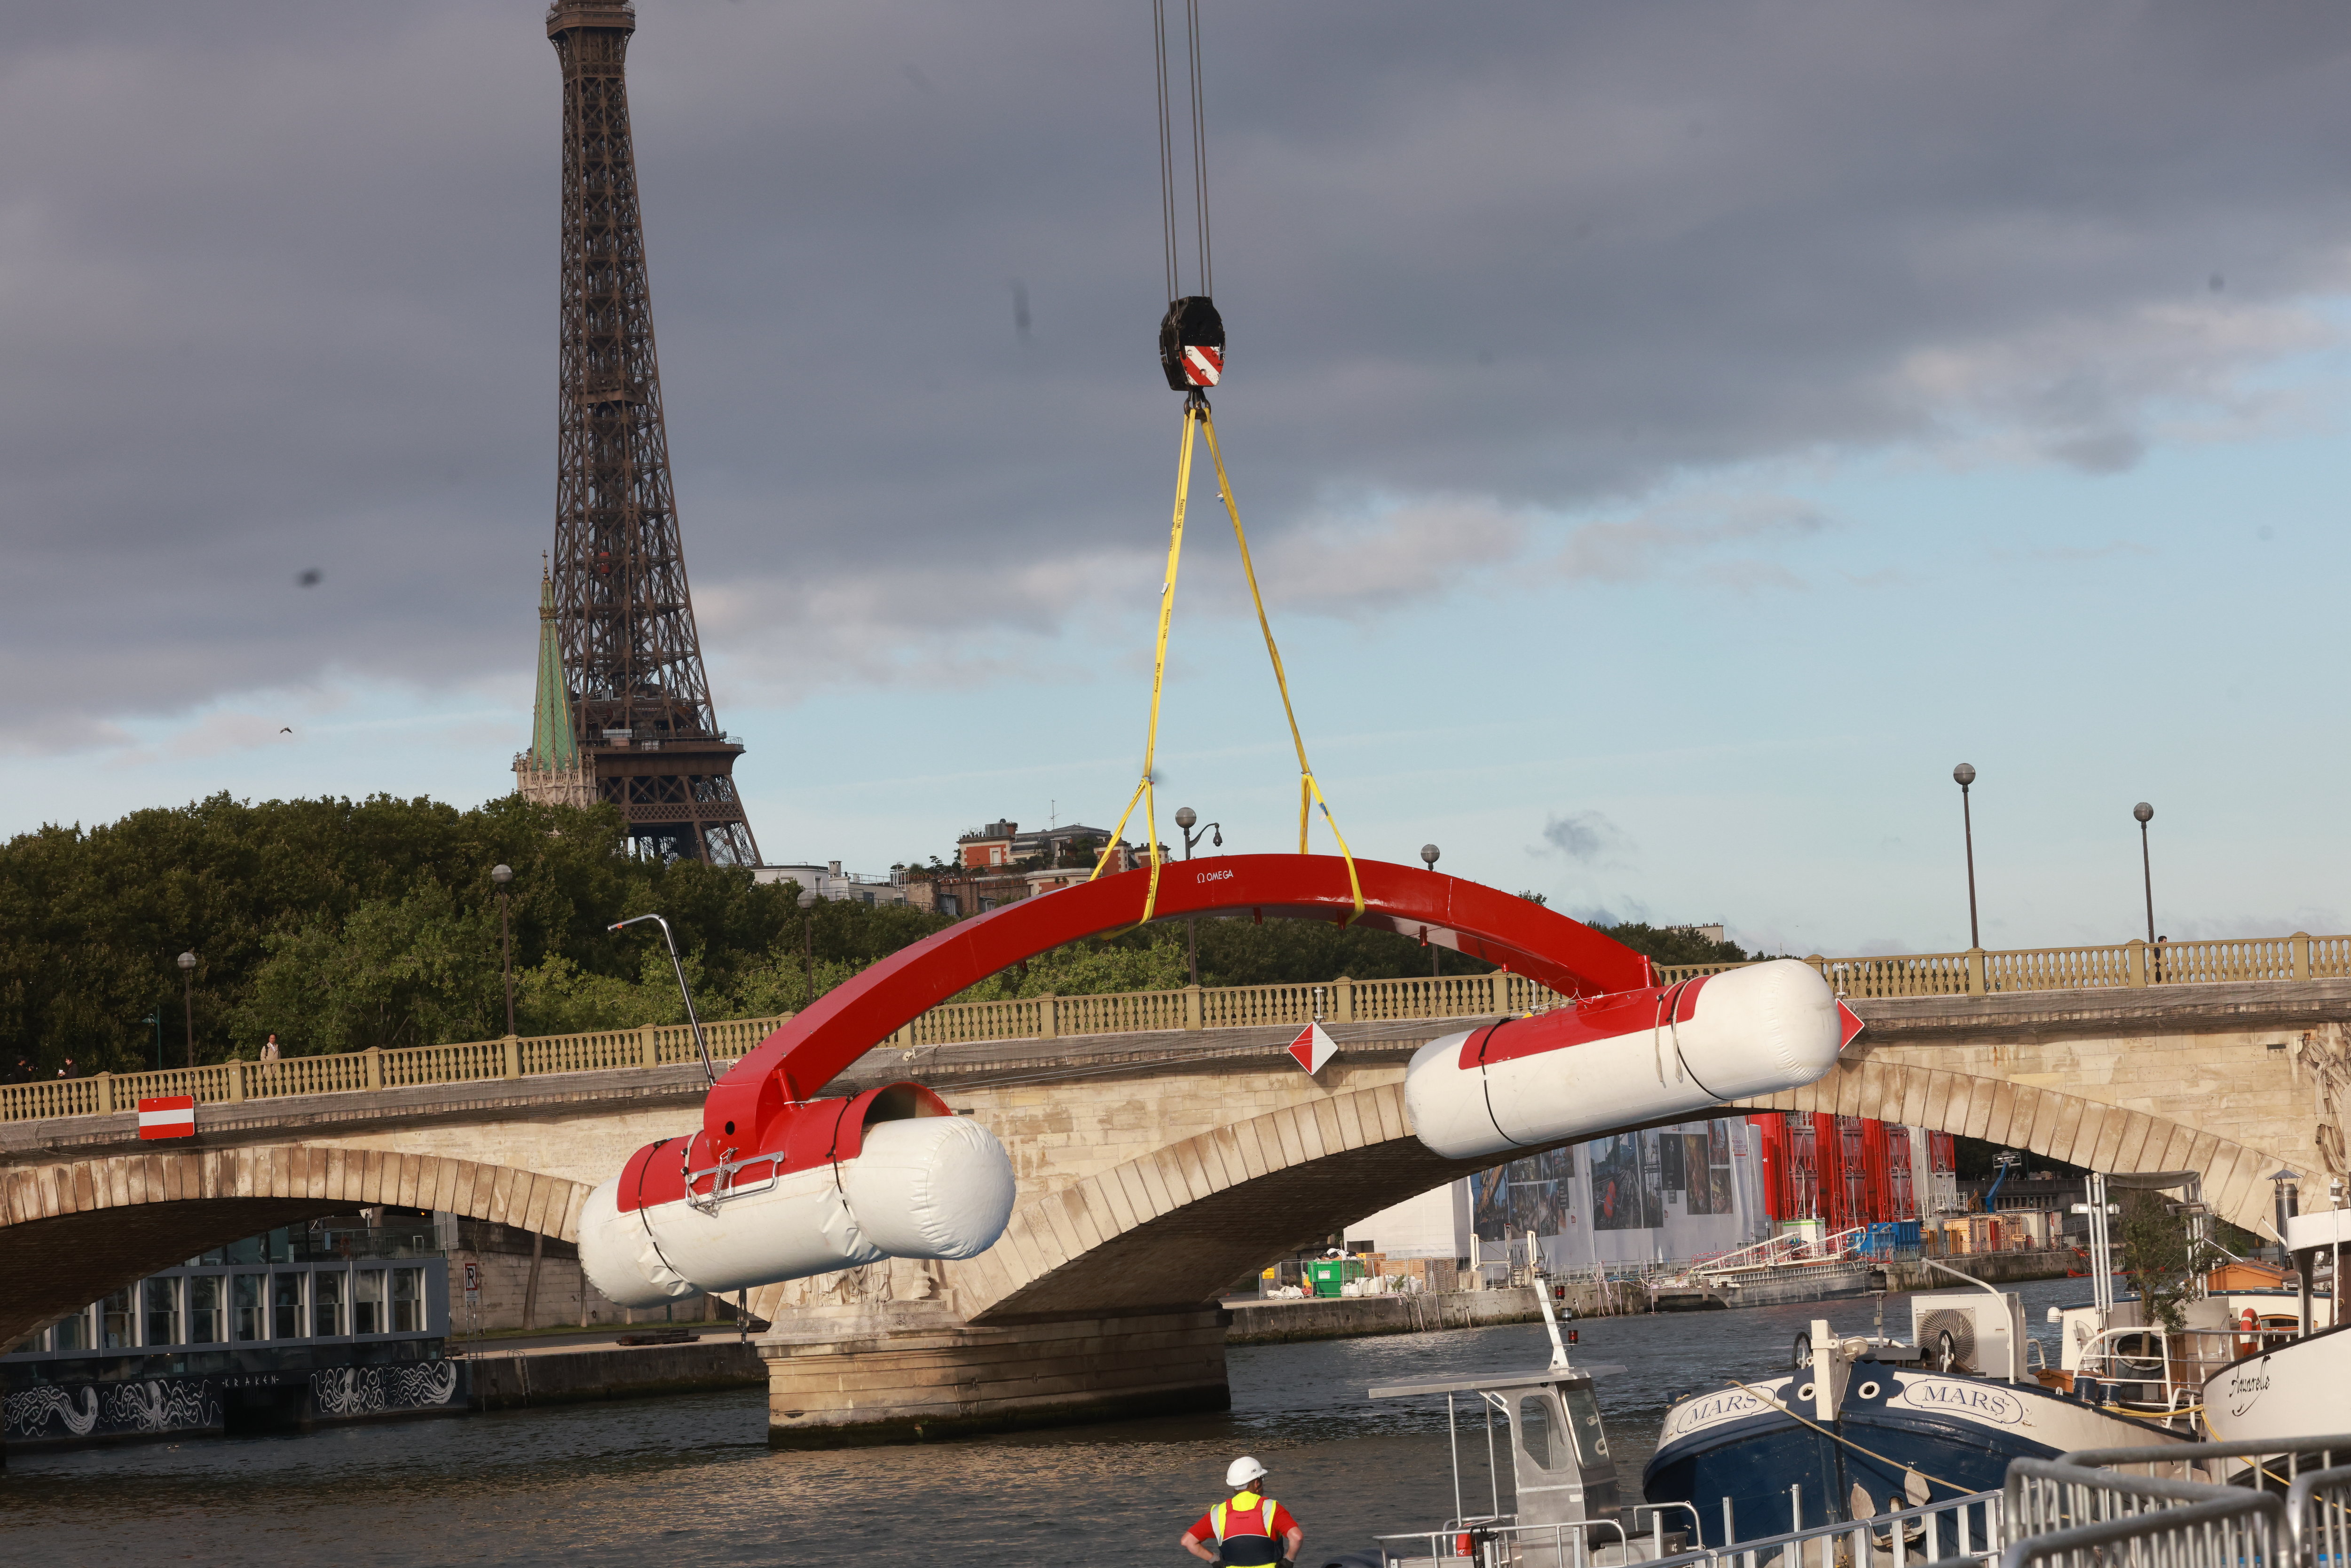 Les installations prévues pour la course de natation en eau libre ce dimanche dans la Seine ont rapidement été démontées. LP/Philippe Lavieille